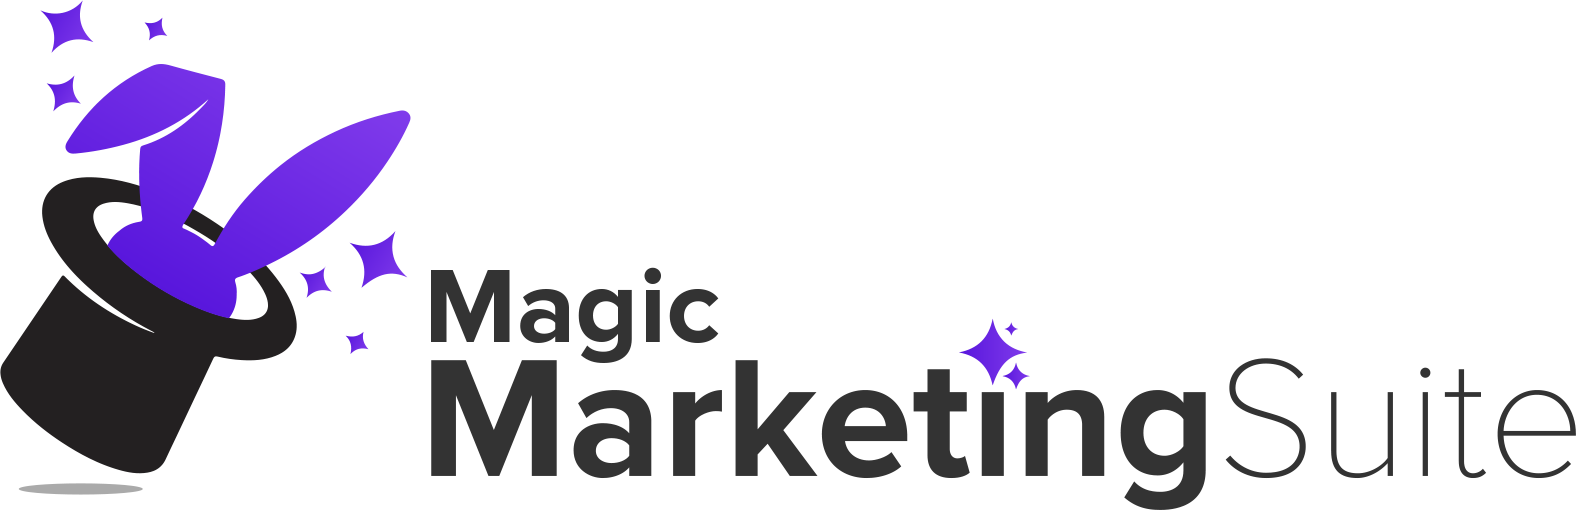 Magic Marketing Suite